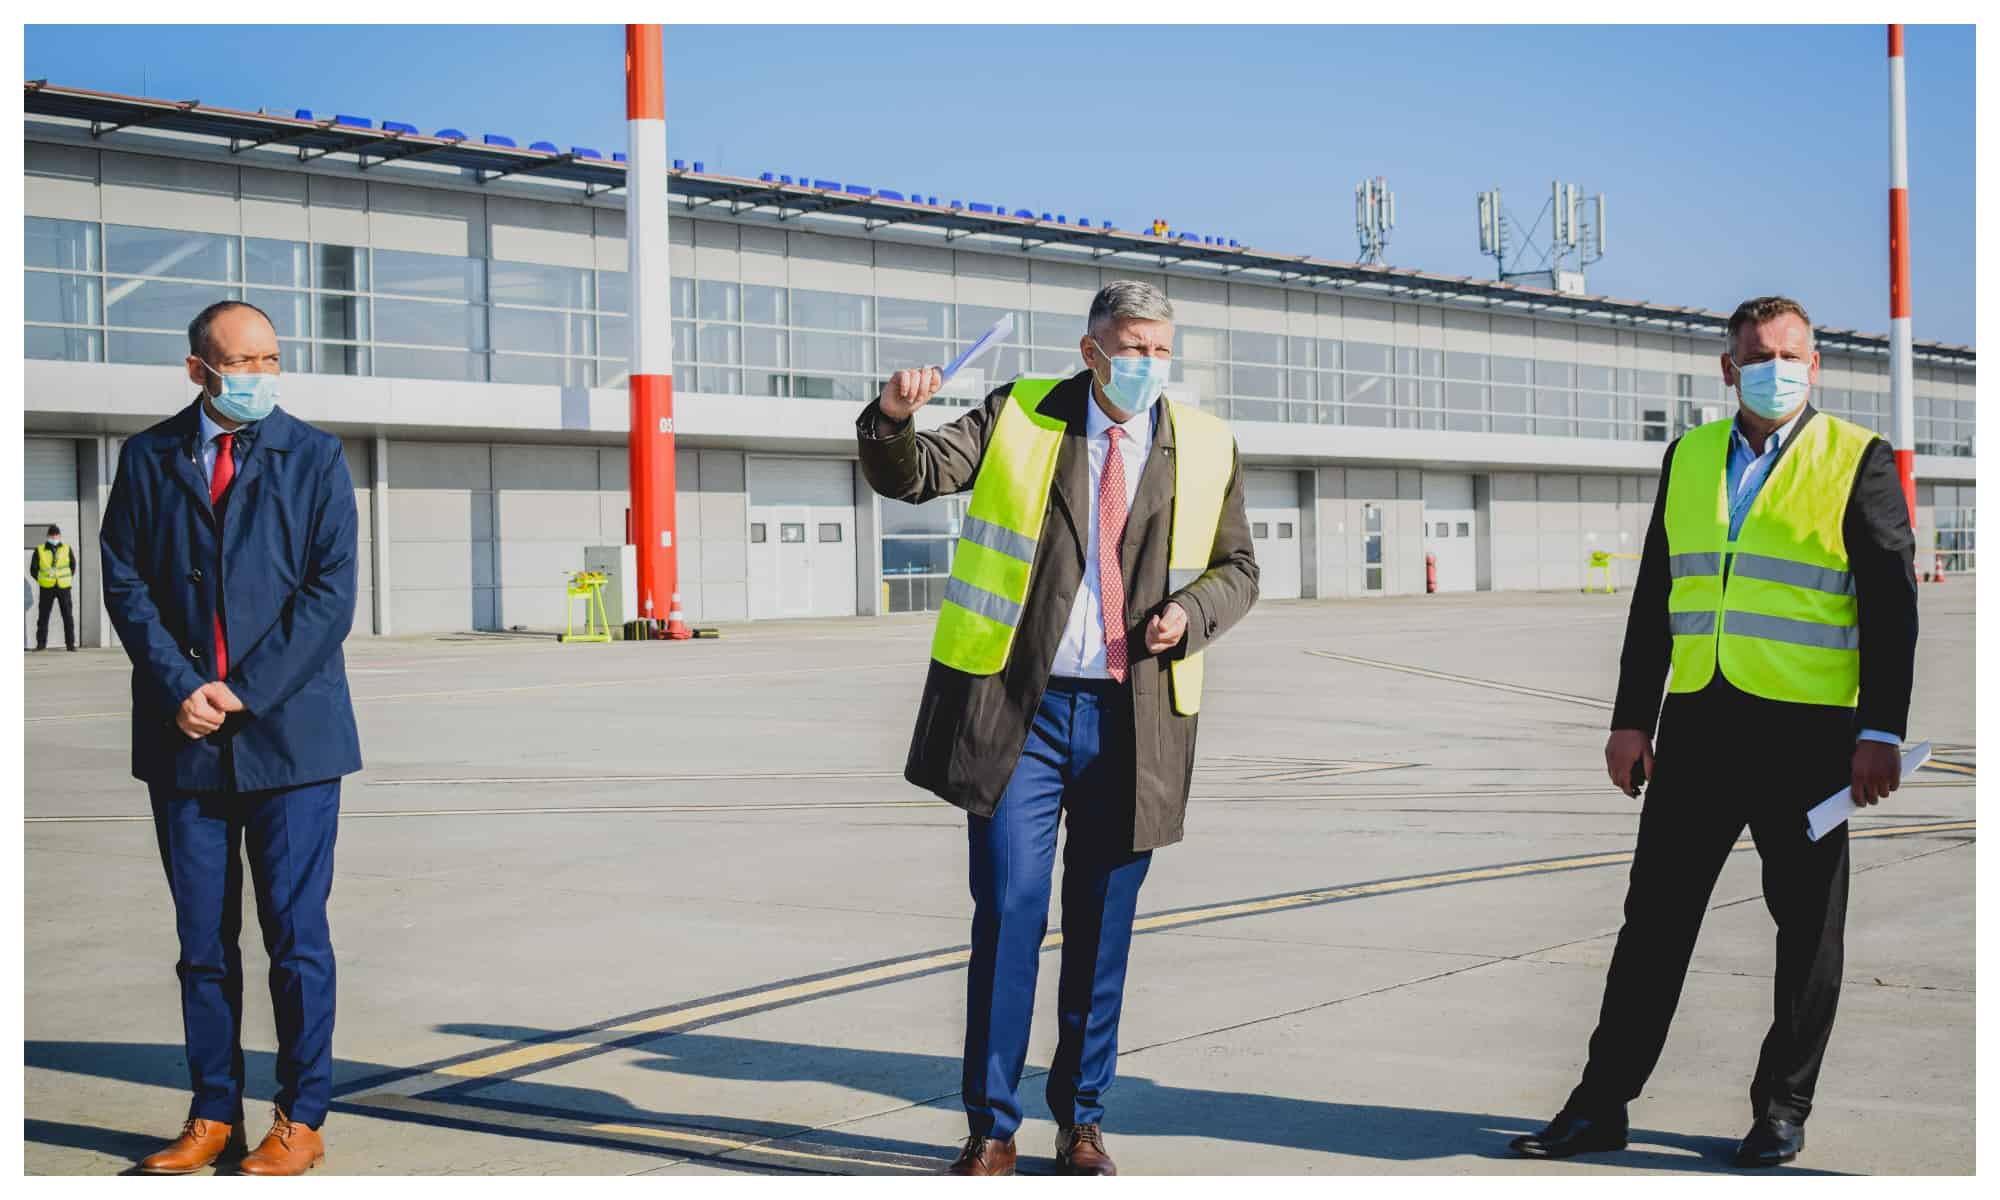 video - echipamente de ultimă generație achiziționate la aeroportul internațional sibiu pentru creșterea nivelului de securitate și siguranță al pasagerilor